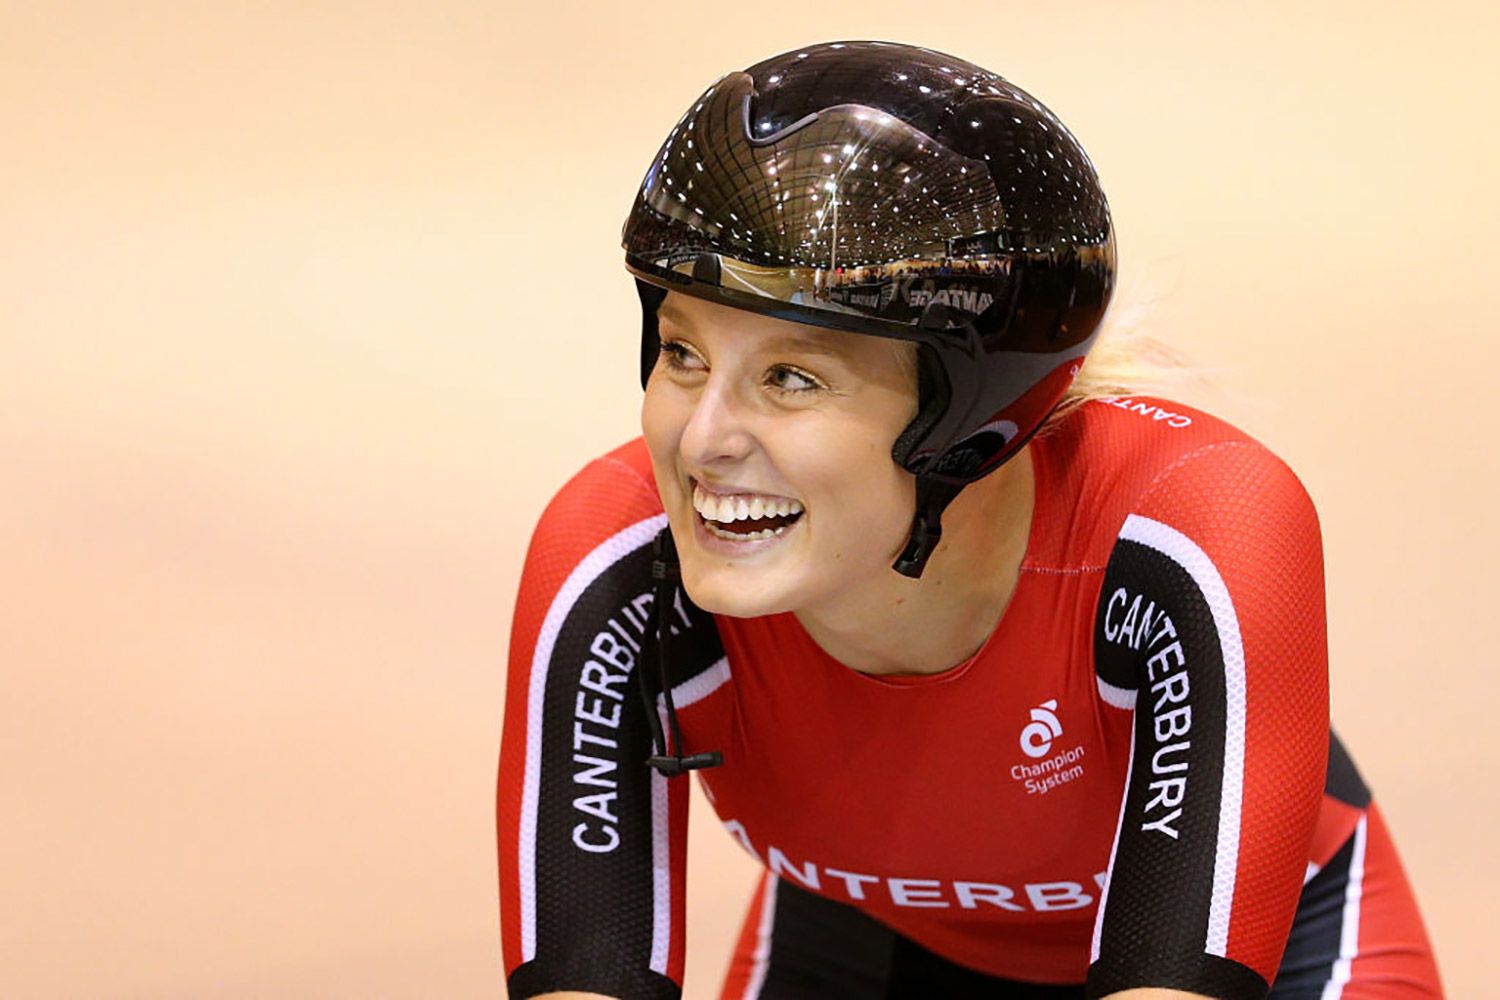 A ex-ciclista olímpica da Nova Zelândia Olivia Podmore morta aos 24: 'Forever in Our Hearts'